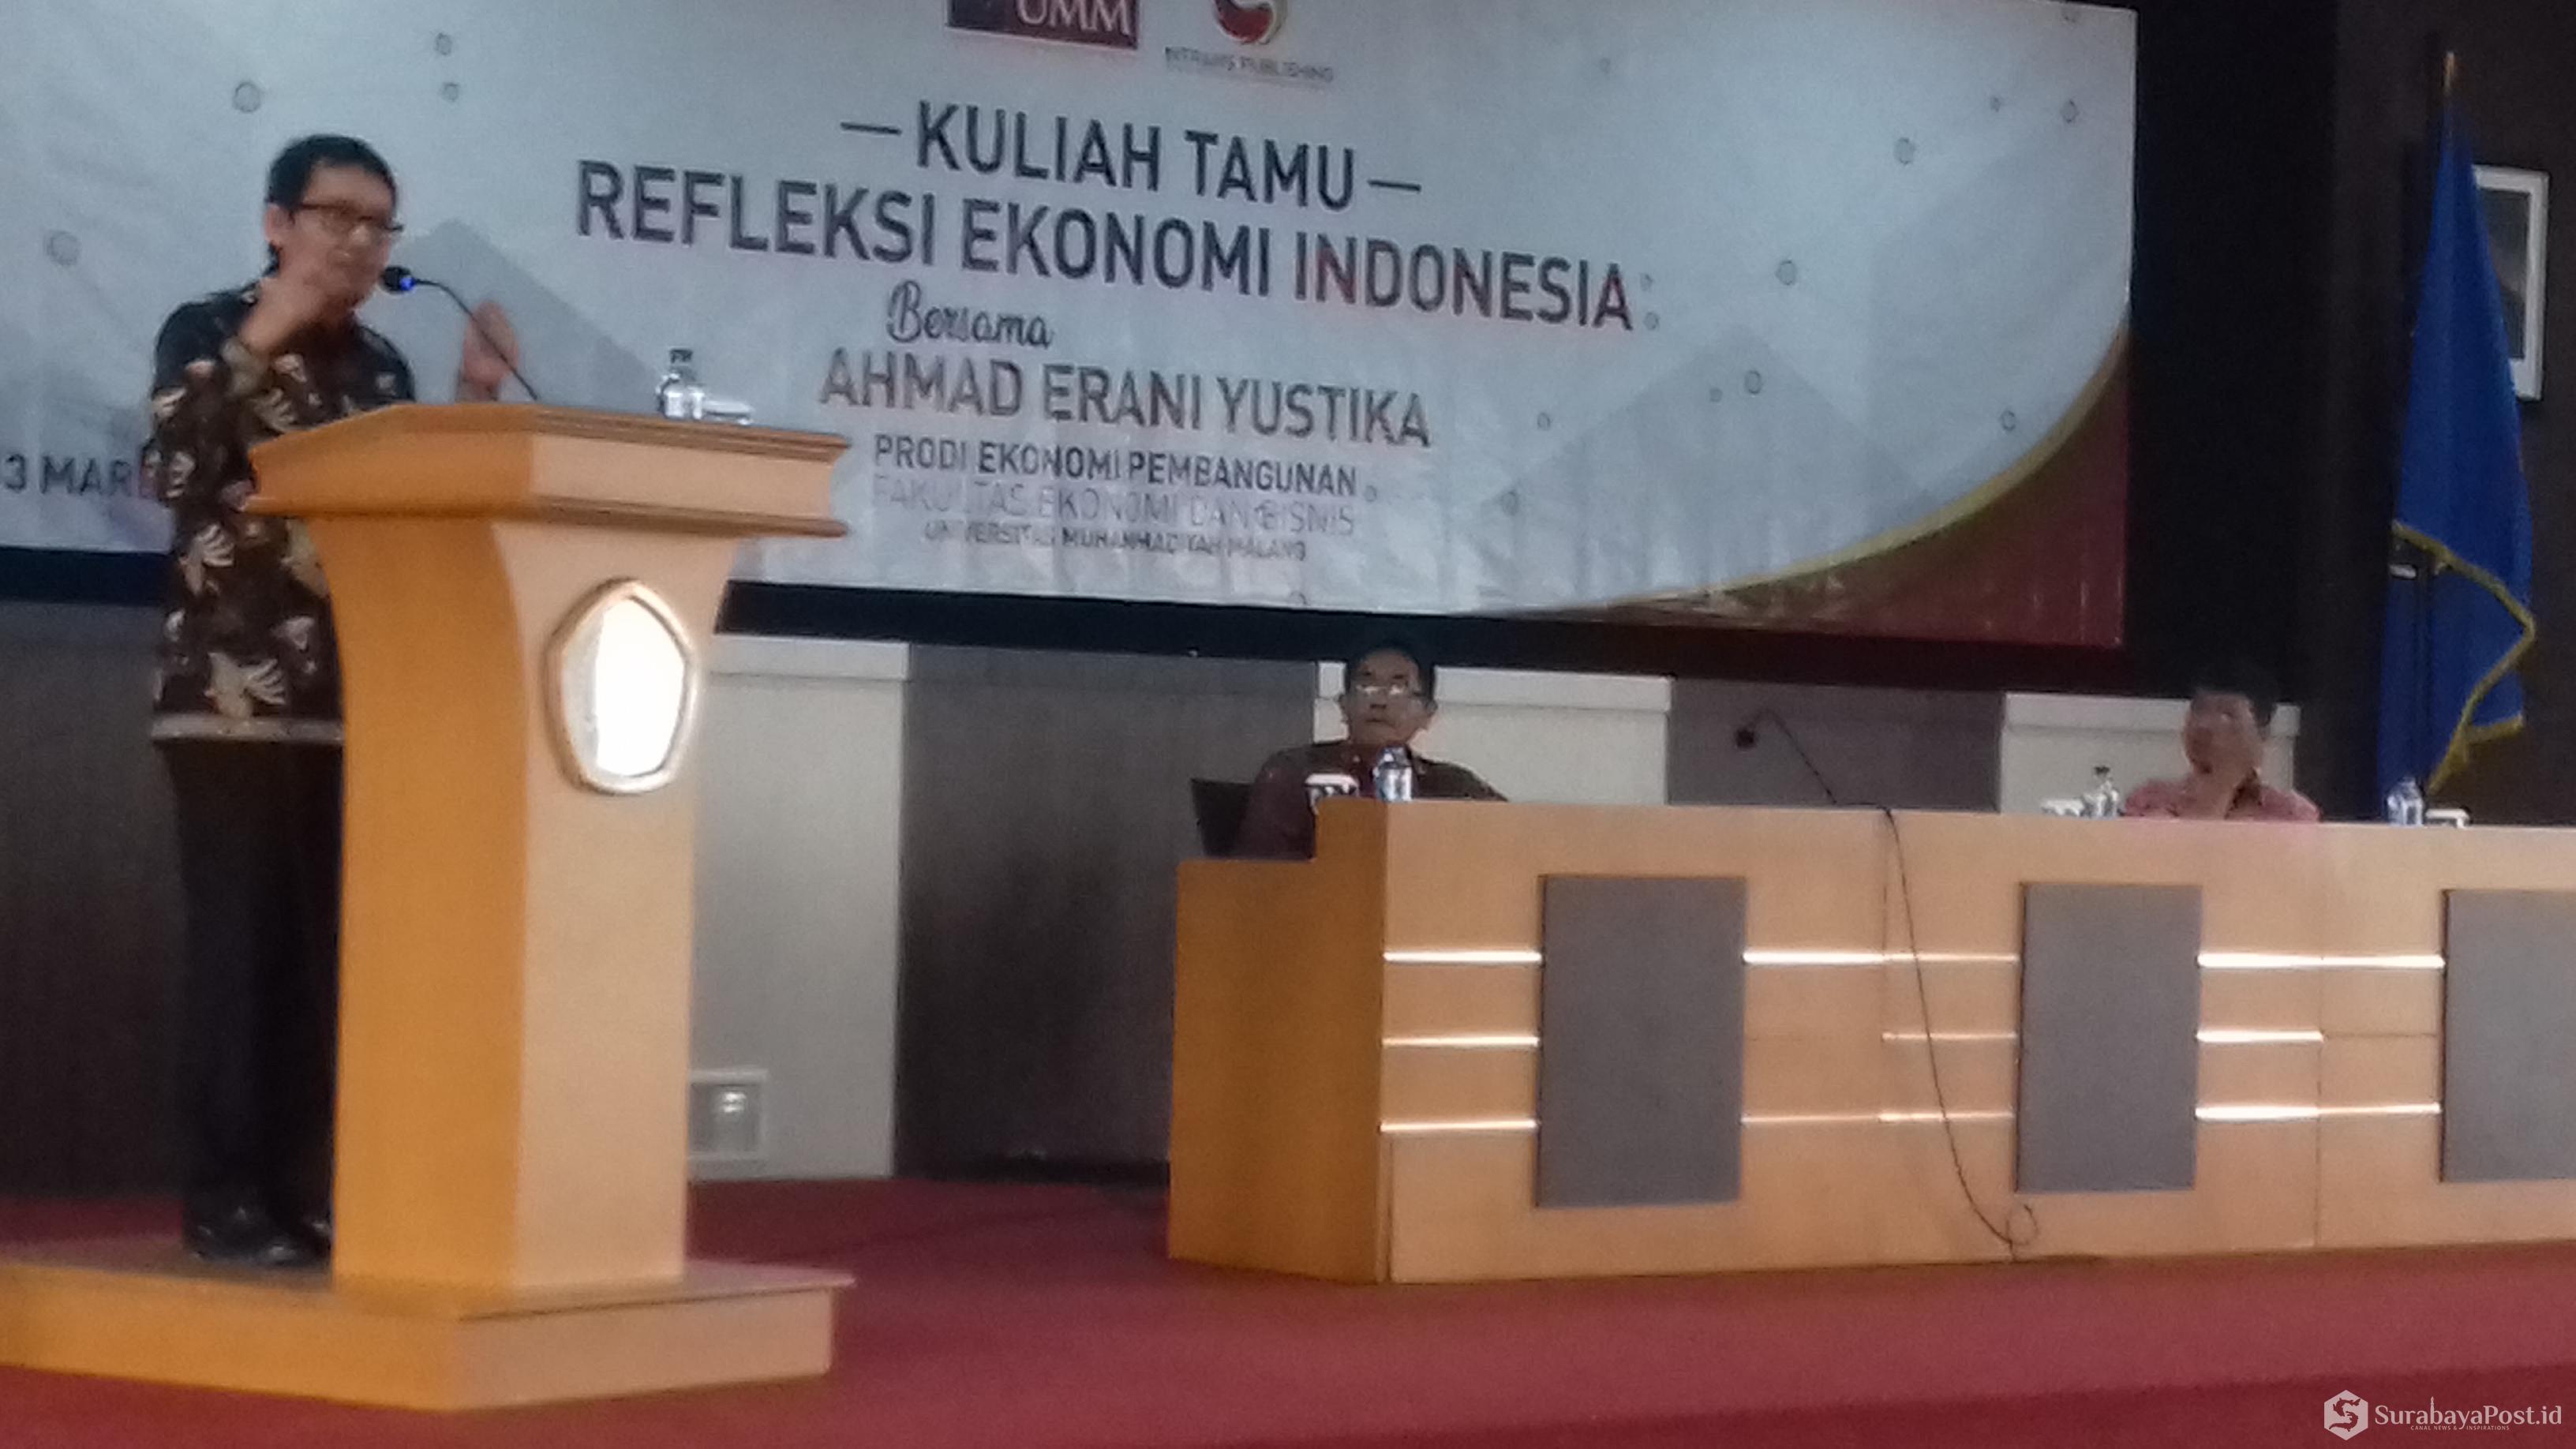 Staf Khusus Presiden Bidang Ekonomi Prof Ahmad Erani Yustika saat memberikan paparan dalam kuliah tamu bertajuk Refleksi Ekonomi Indonesia di kampus UMM.